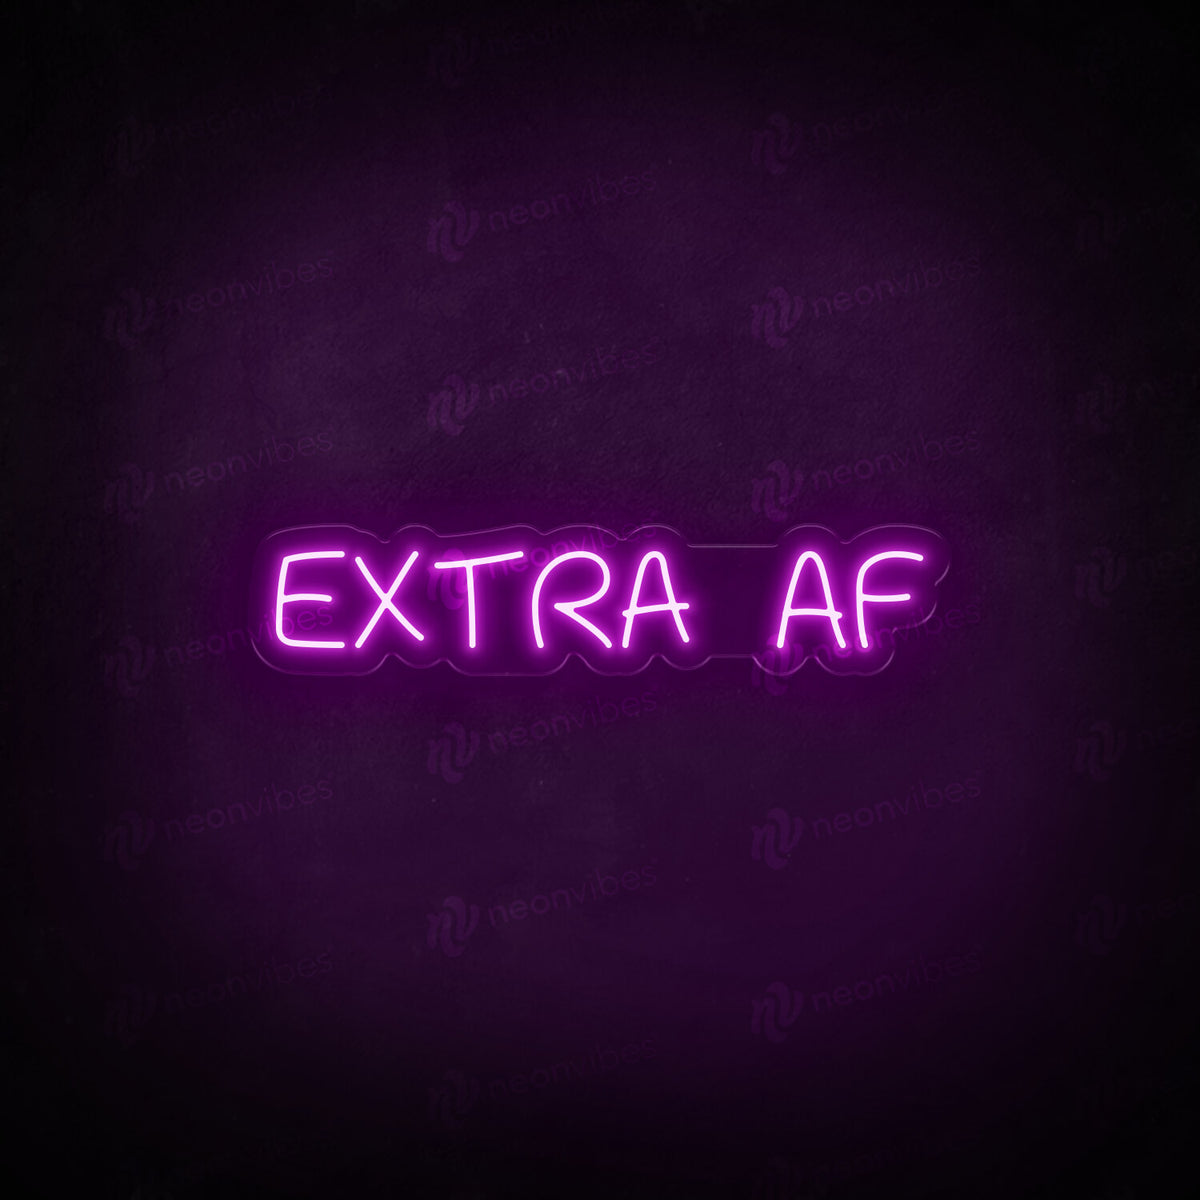 Extra AF neon sign